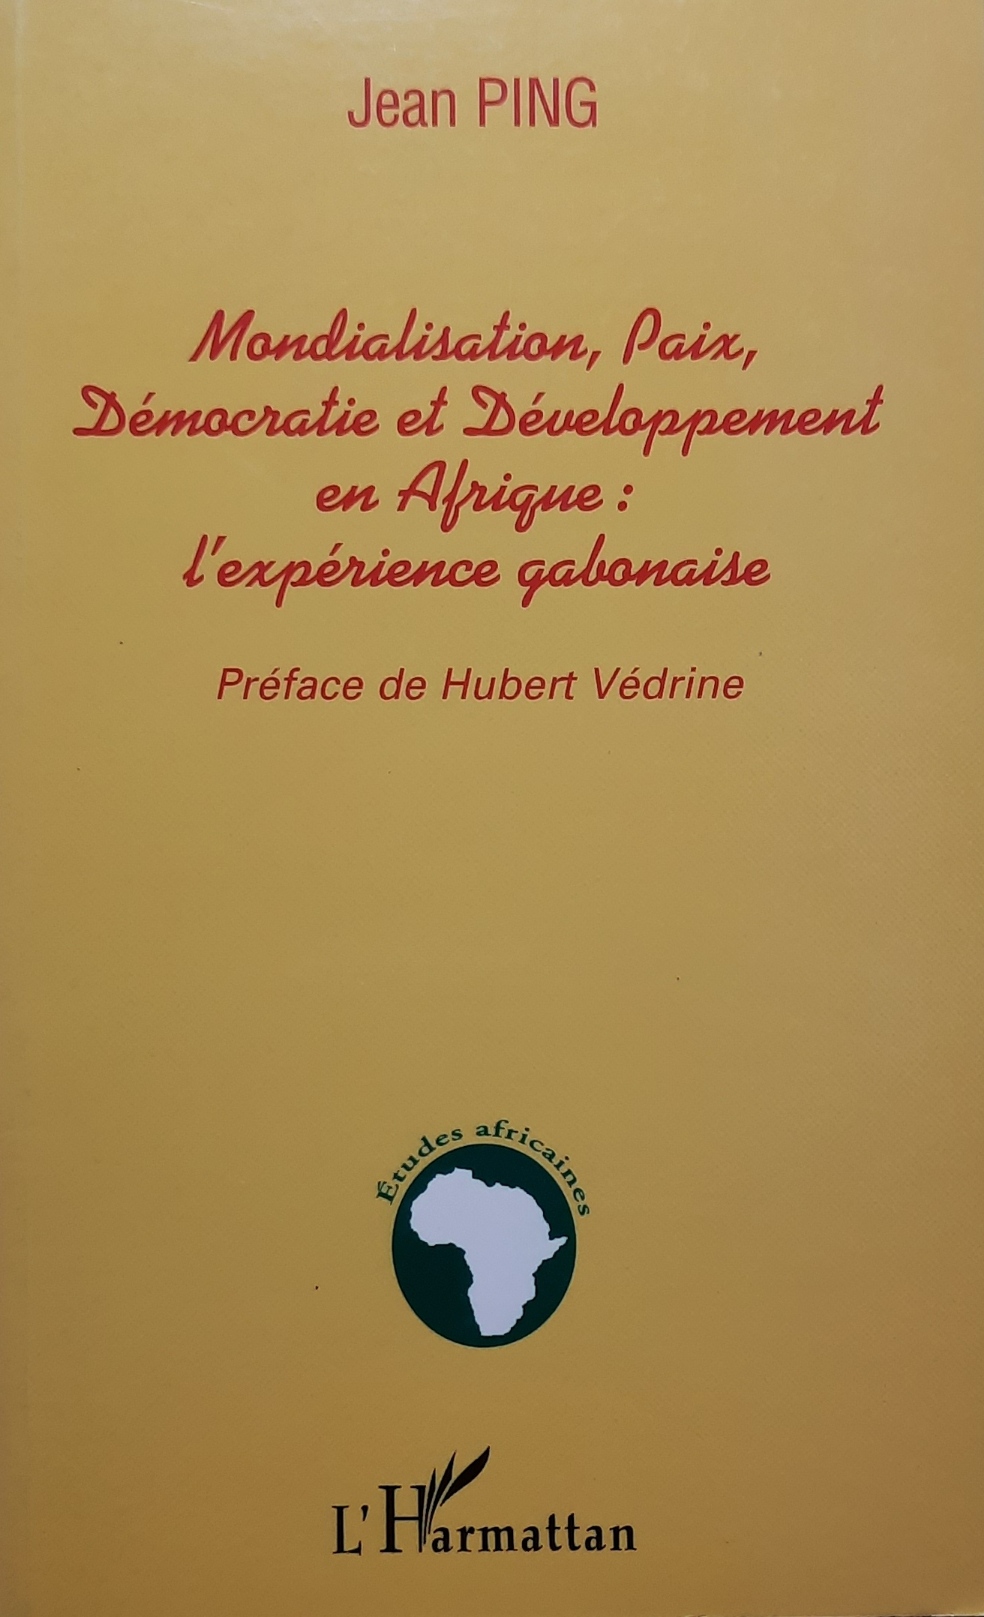 Book cover 202105320089: PING Jean, VEDRINE Hubert (préface) | Mondialisation, Paix, Démocratie et Développement en Afrique: l